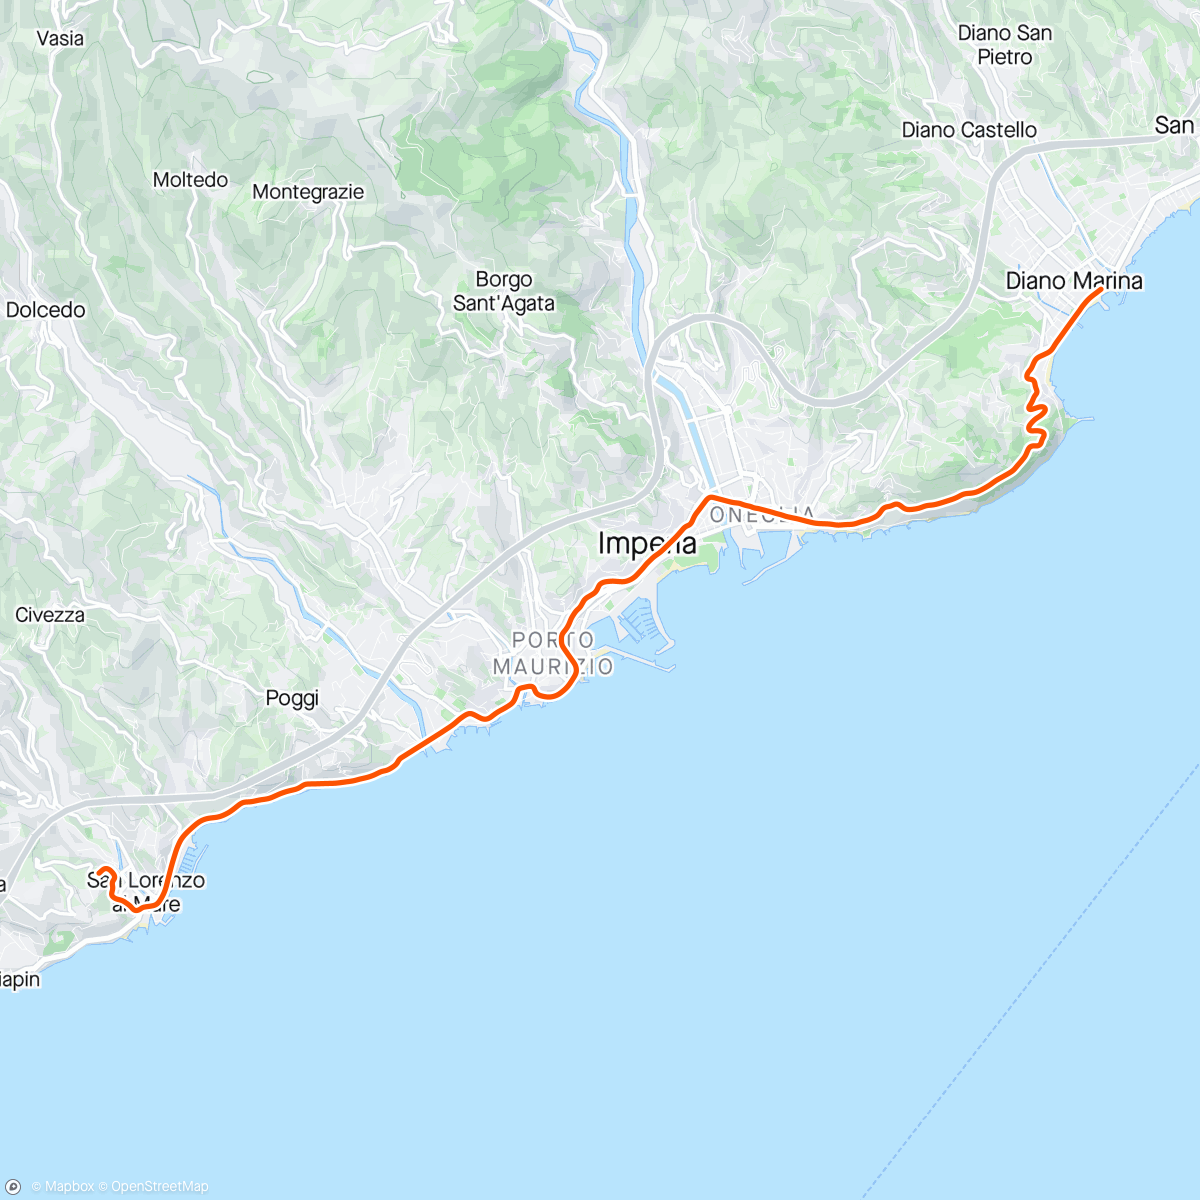 Mapa de la actividad, ROUVY - Diano Marina to Pantai | Italy